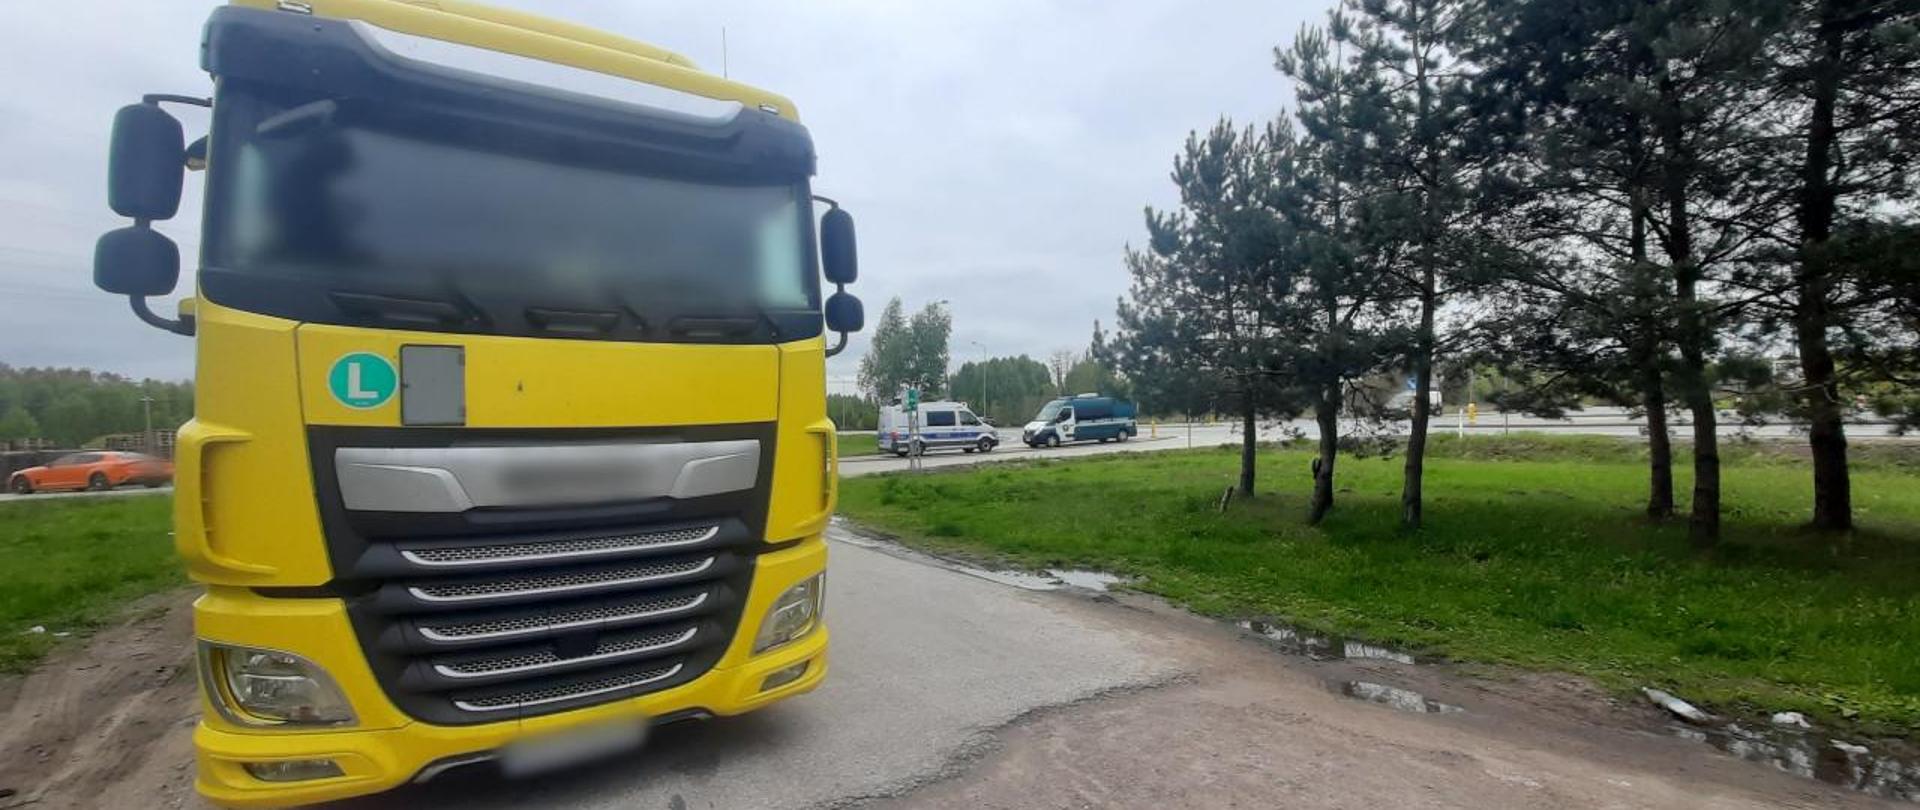 Ukraiński zestaw ciężarowy i stojące z tyłu oznakowane furgony mazowieckiej Inspekcji Transportu Drogowego i Policji.